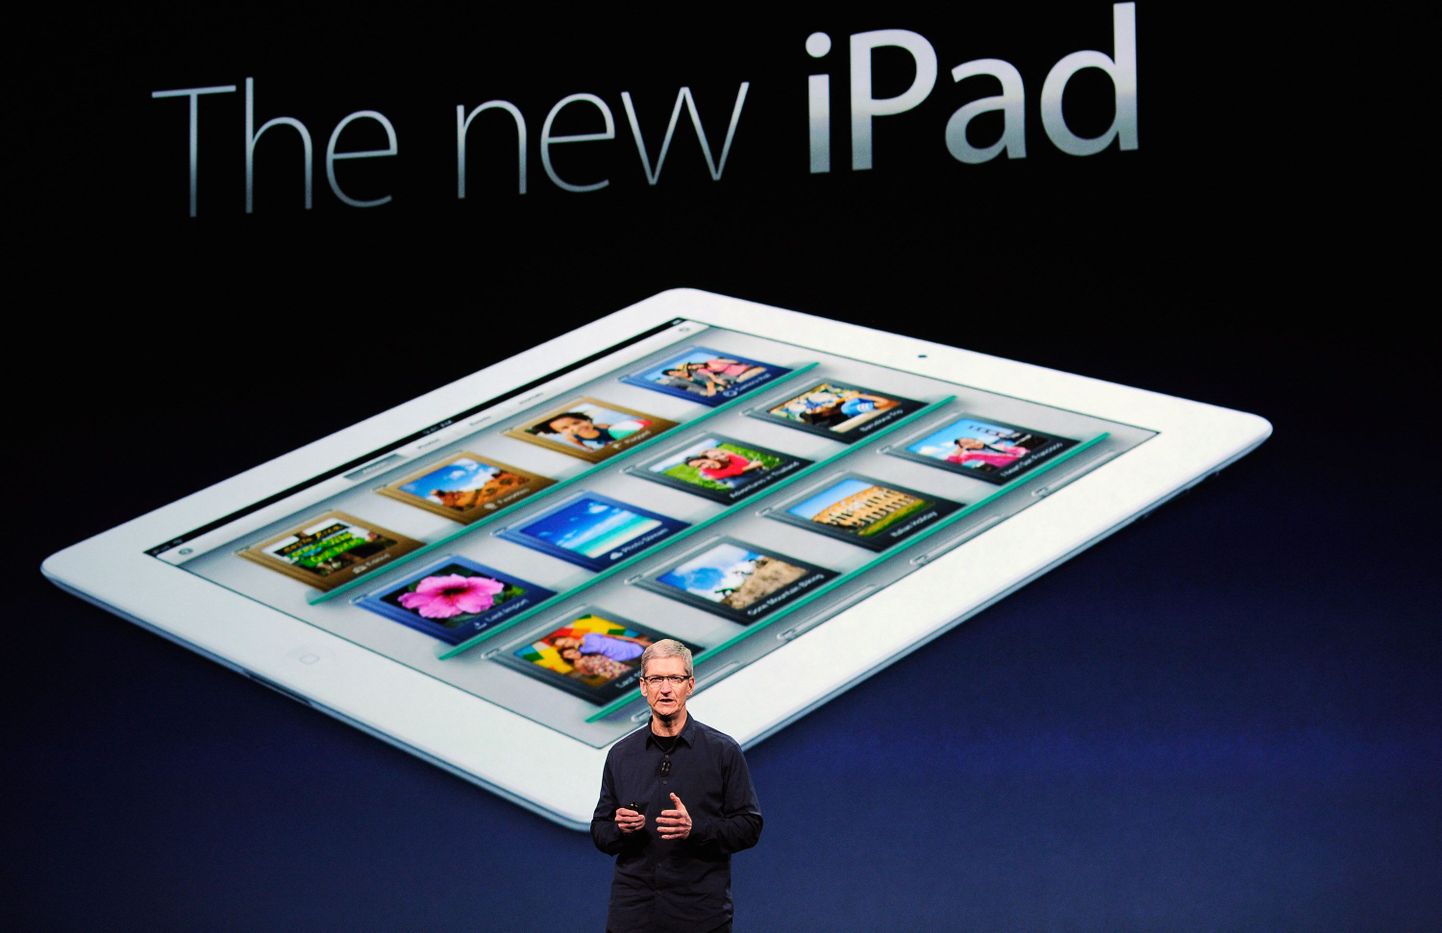 Apple'i tegevjuht Tim Cook uut iPadi tutvustamas.